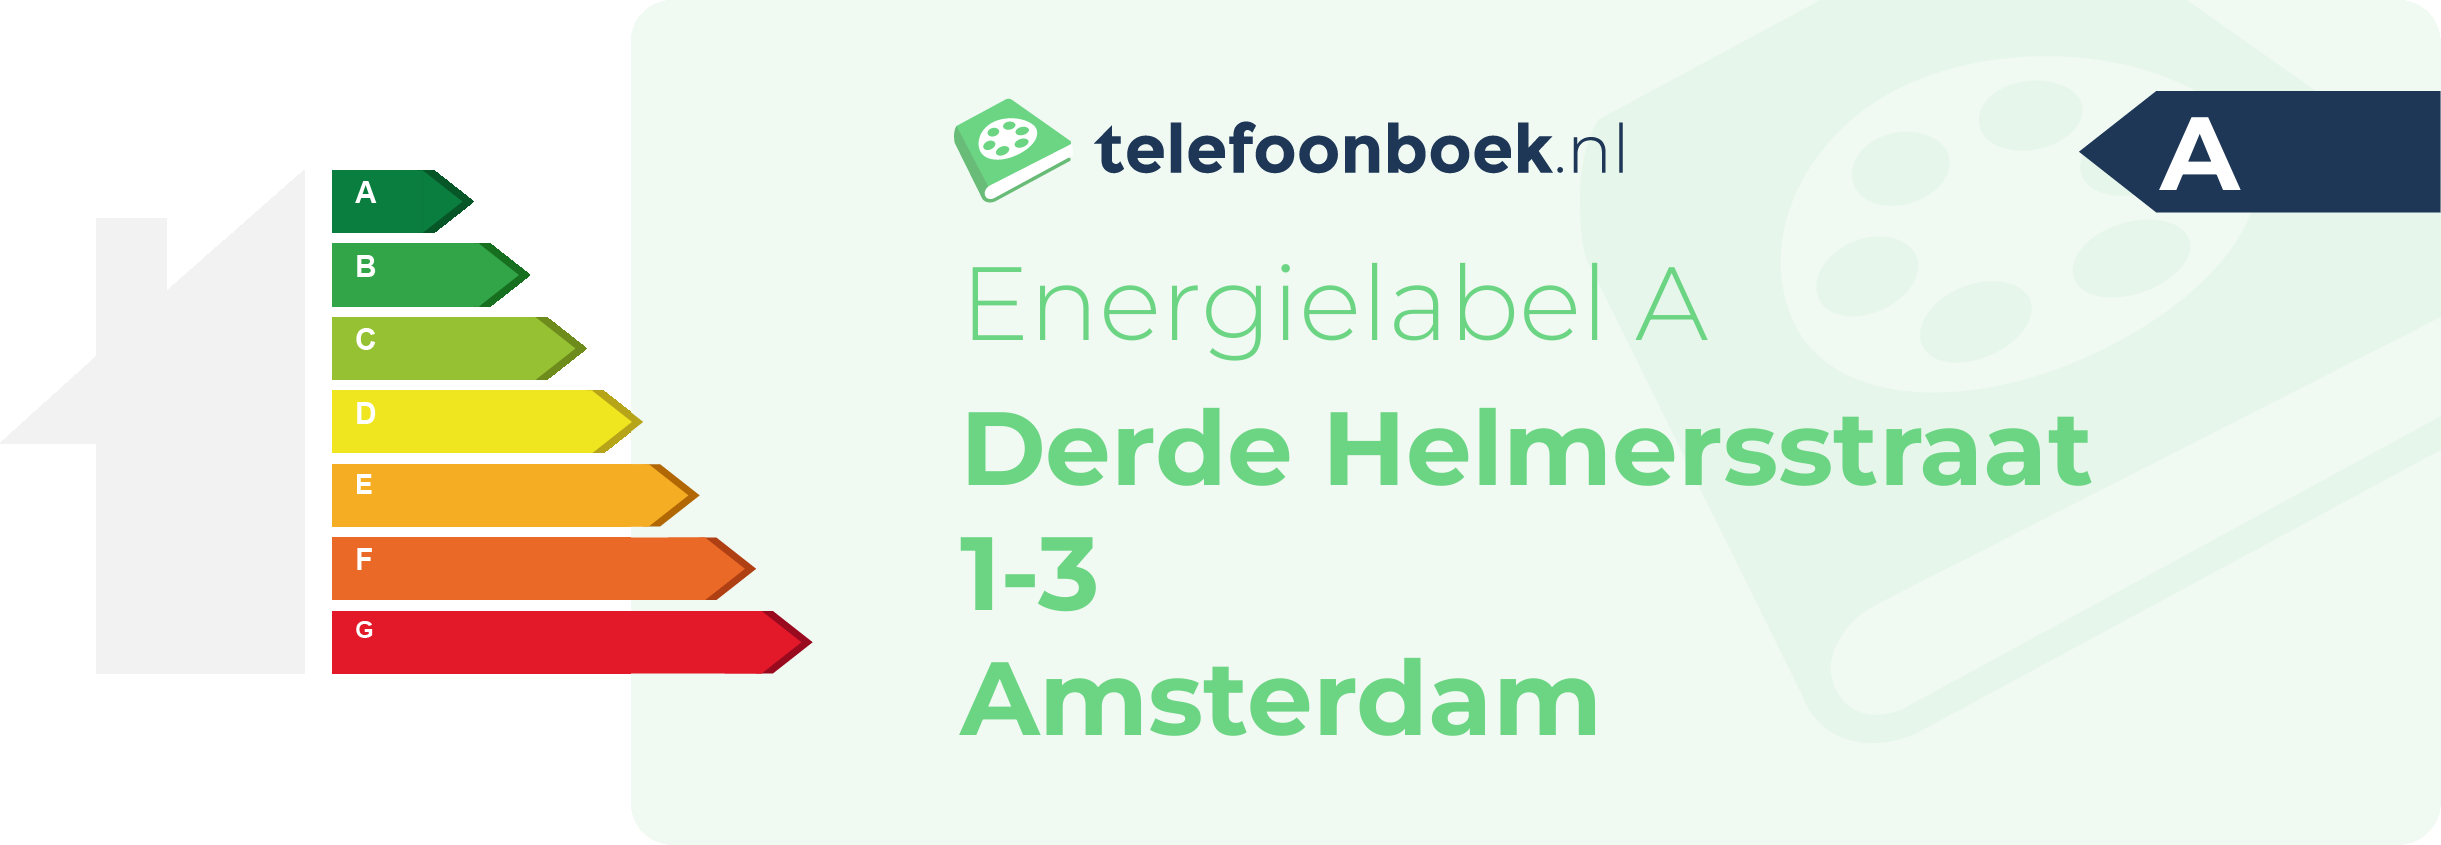 Energielabel Derde Helmersstraat 1-3 Amsterdam